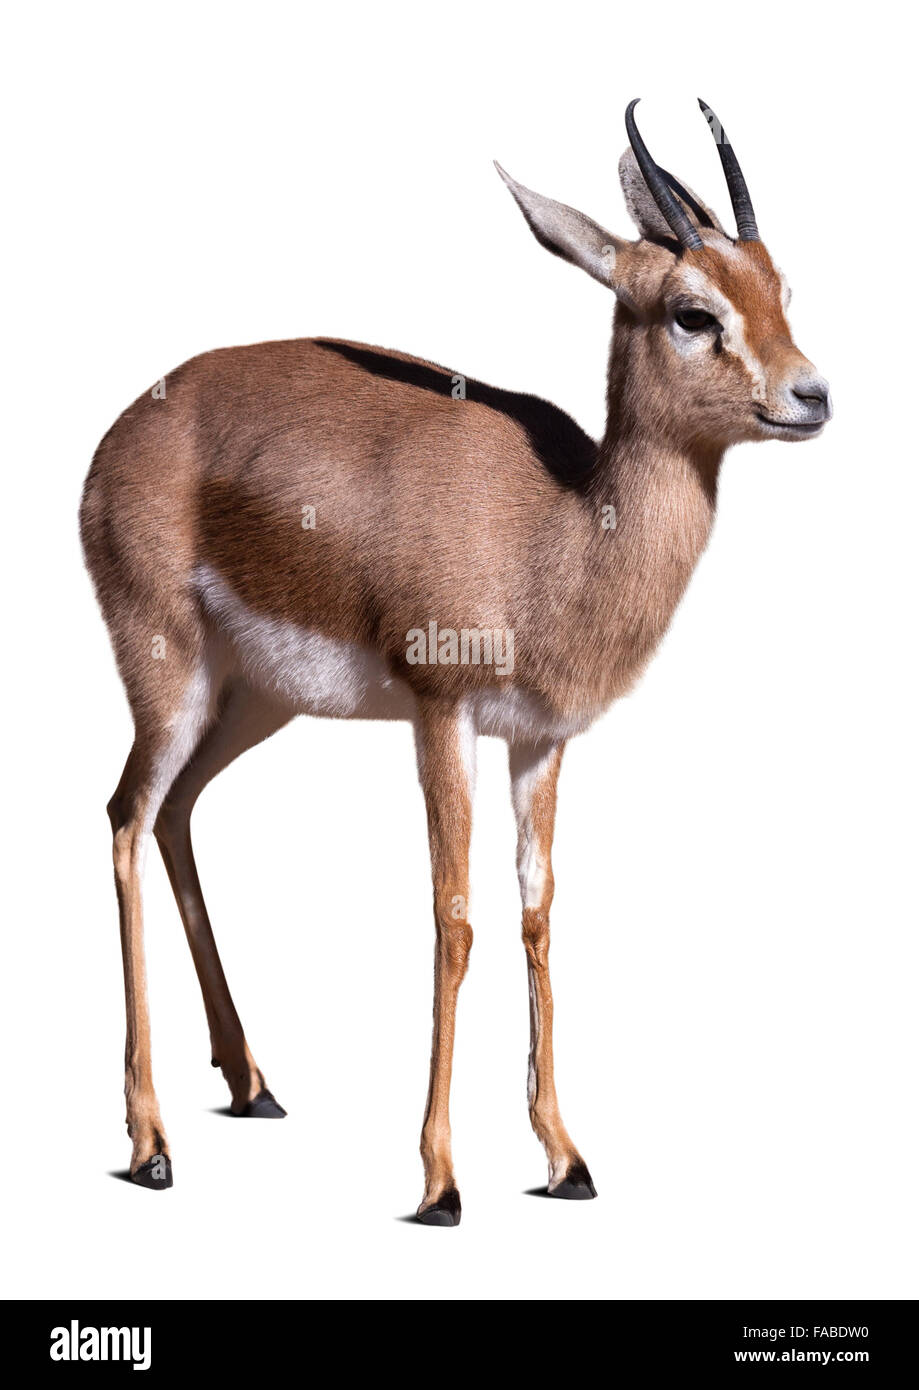 Dorcas gazelle.  Isolated over white background Stock Photo